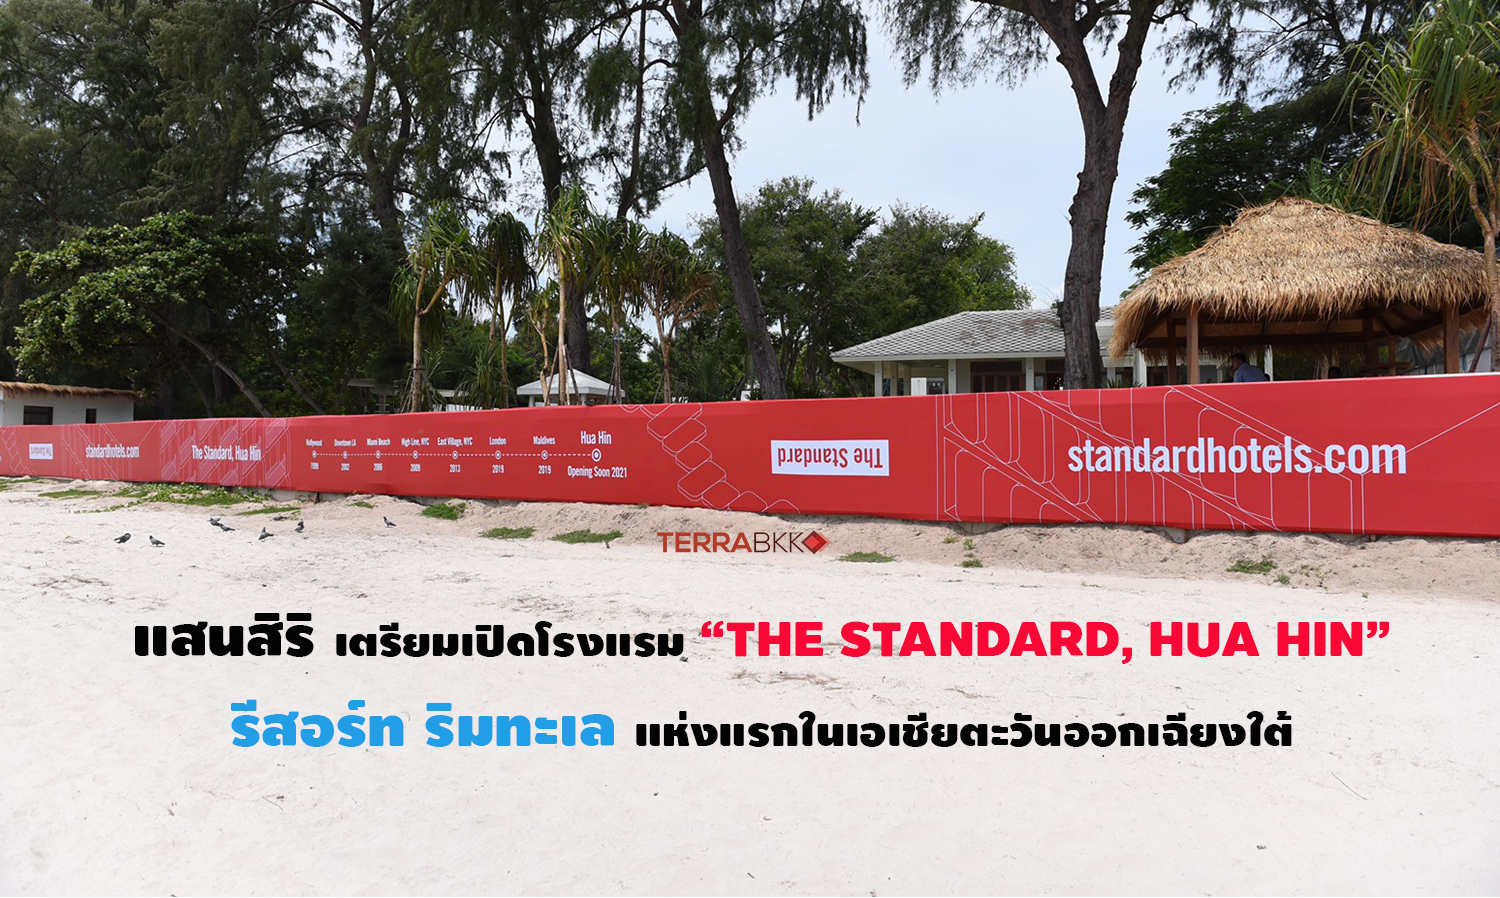 แสนสิริ เตรียมเปิดโรงแรม “THE STANDARD, HUA HIN”  รีสอร์ท ริมทะเล แห่งแรกในเอเชียตะวันออกเฉียงใต้ พร้อมรับตลาดท่องเที่ยวฟื้นปลายปีนี้